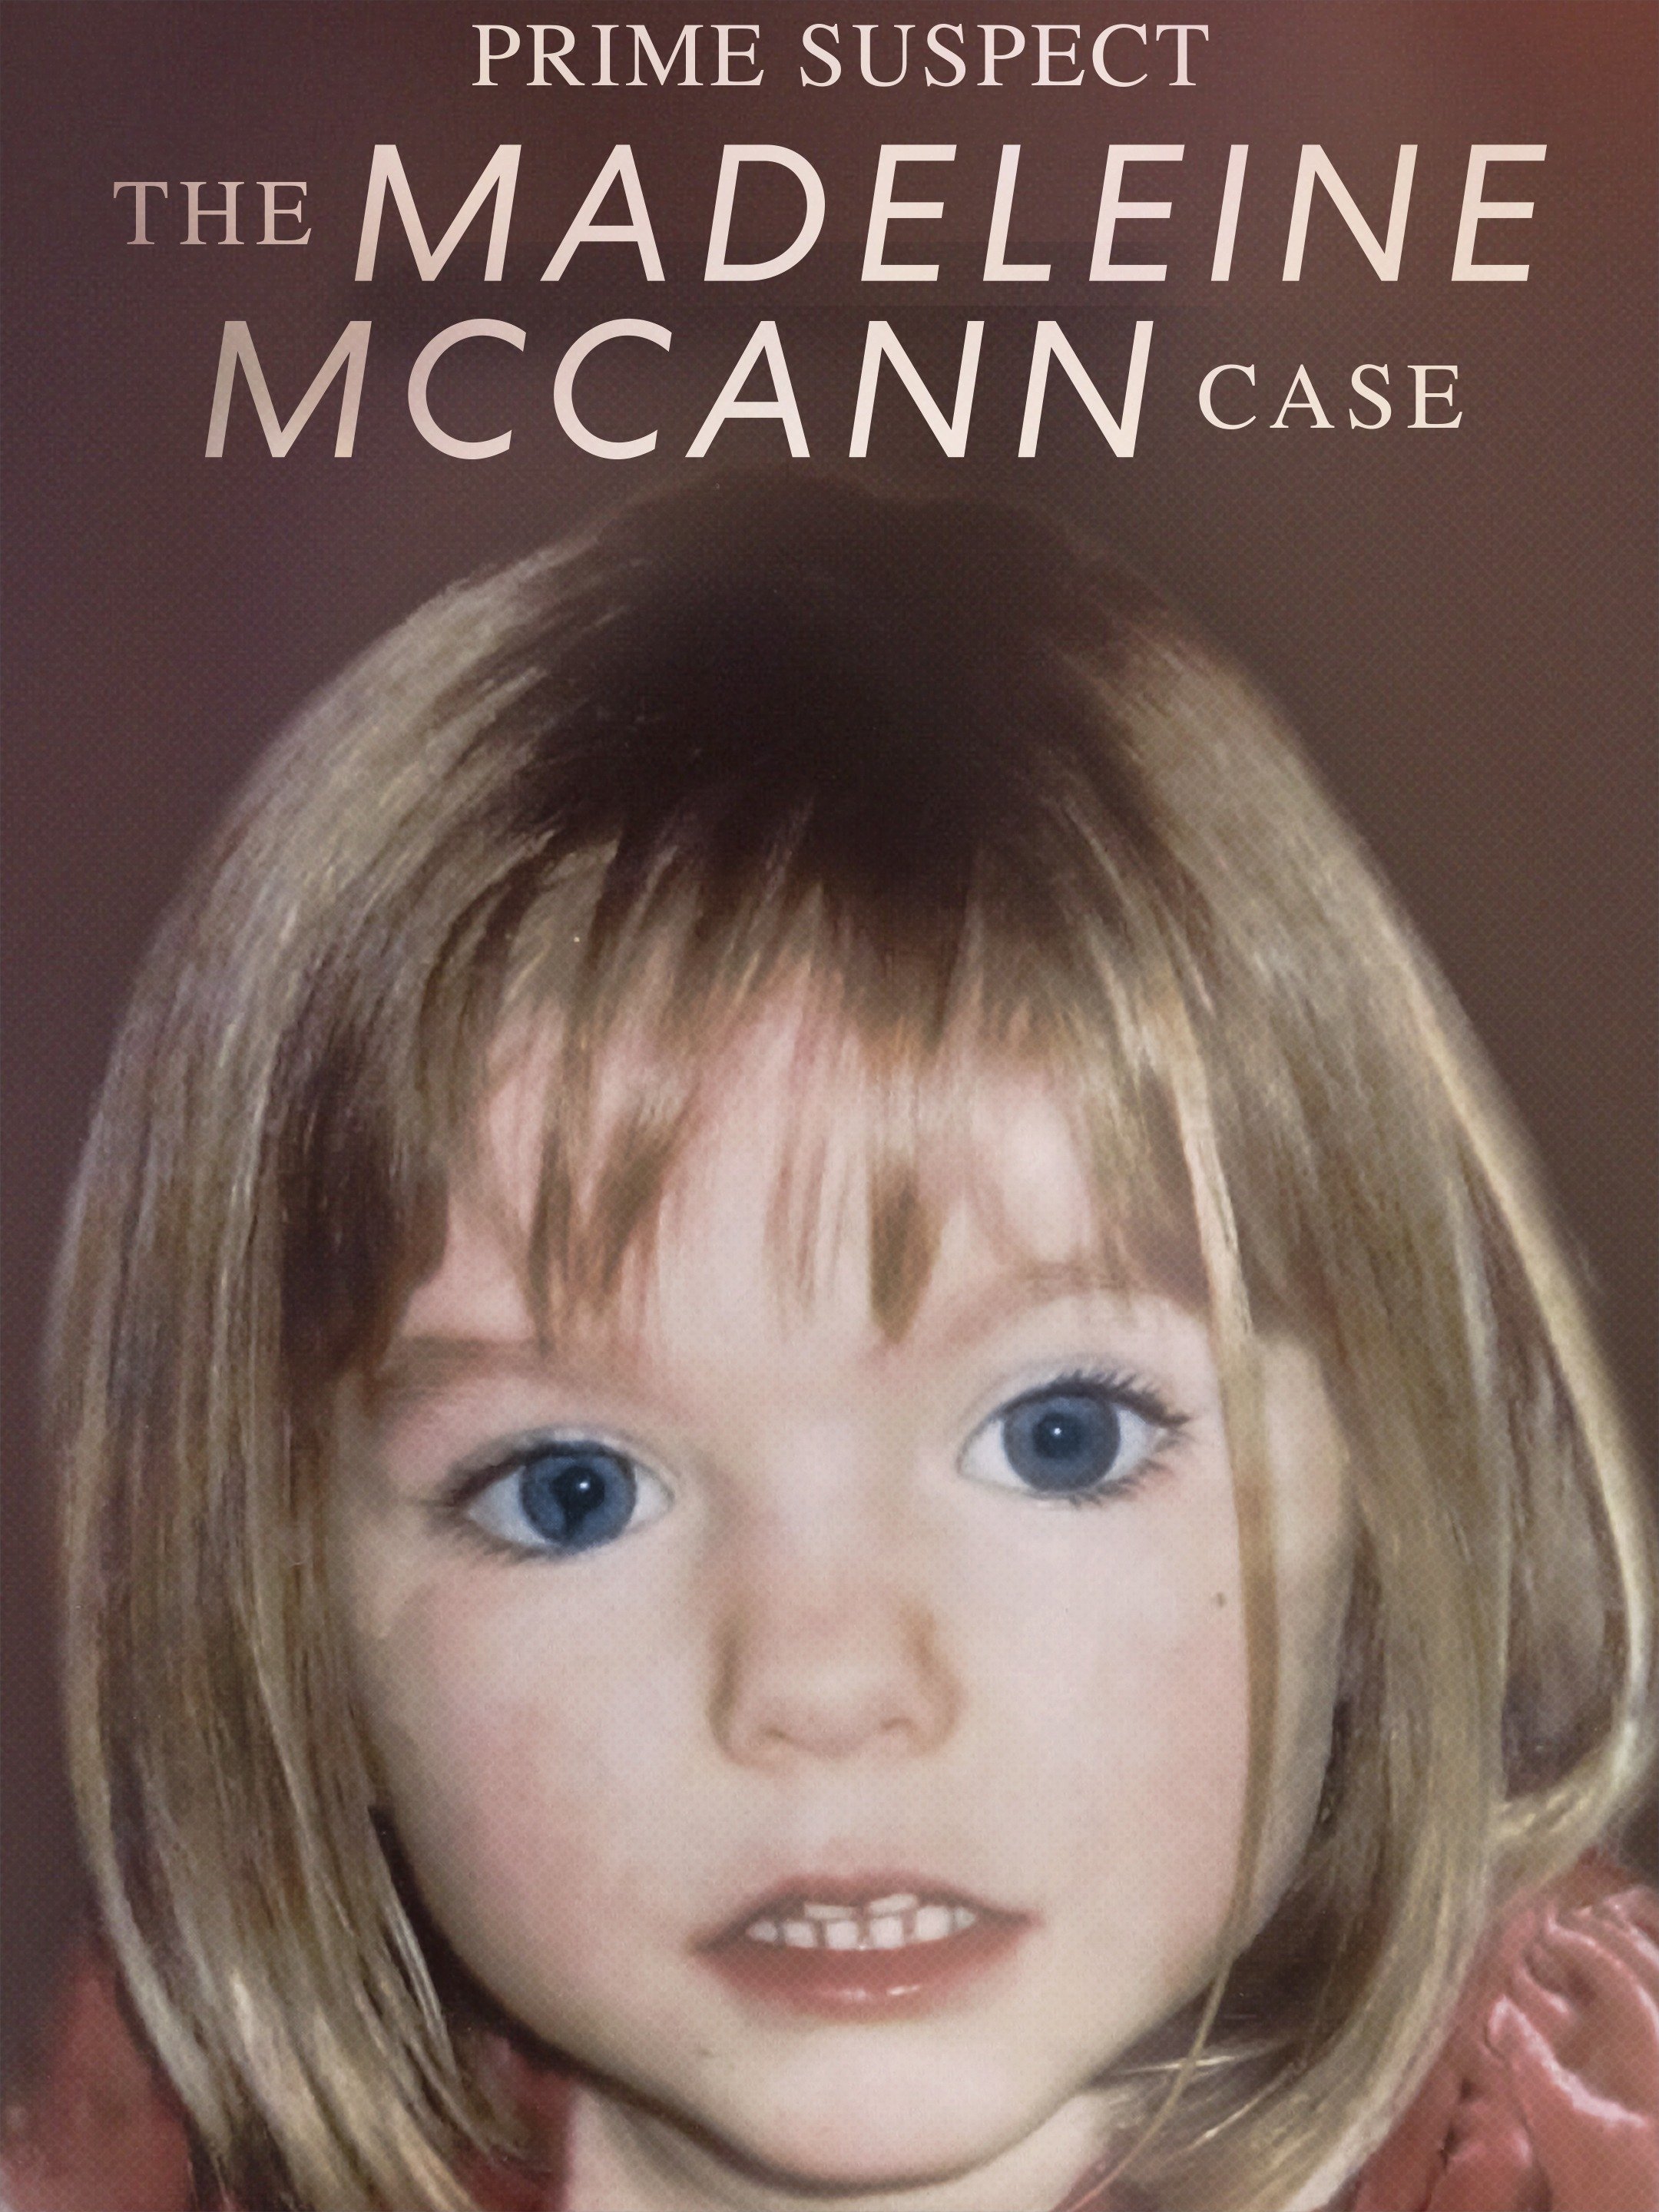 Hovedmistænkt - Madeline McCann-sagen